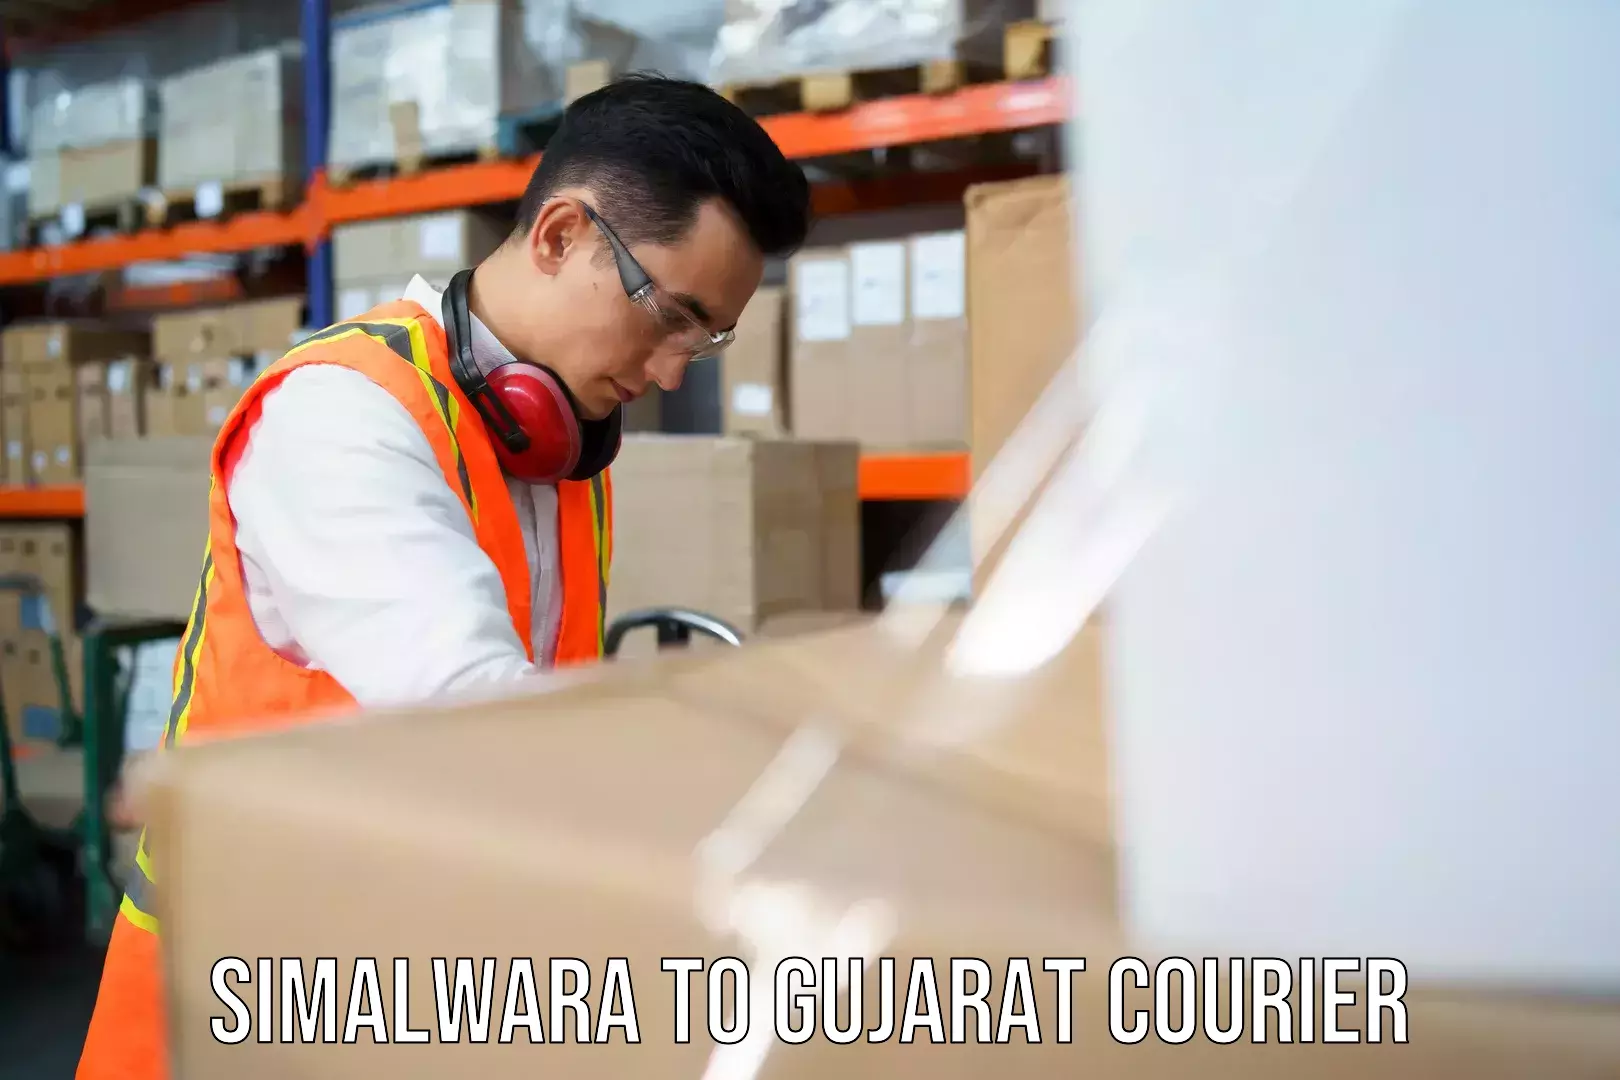 Nationwide shipping services Simalwara to Gujarat